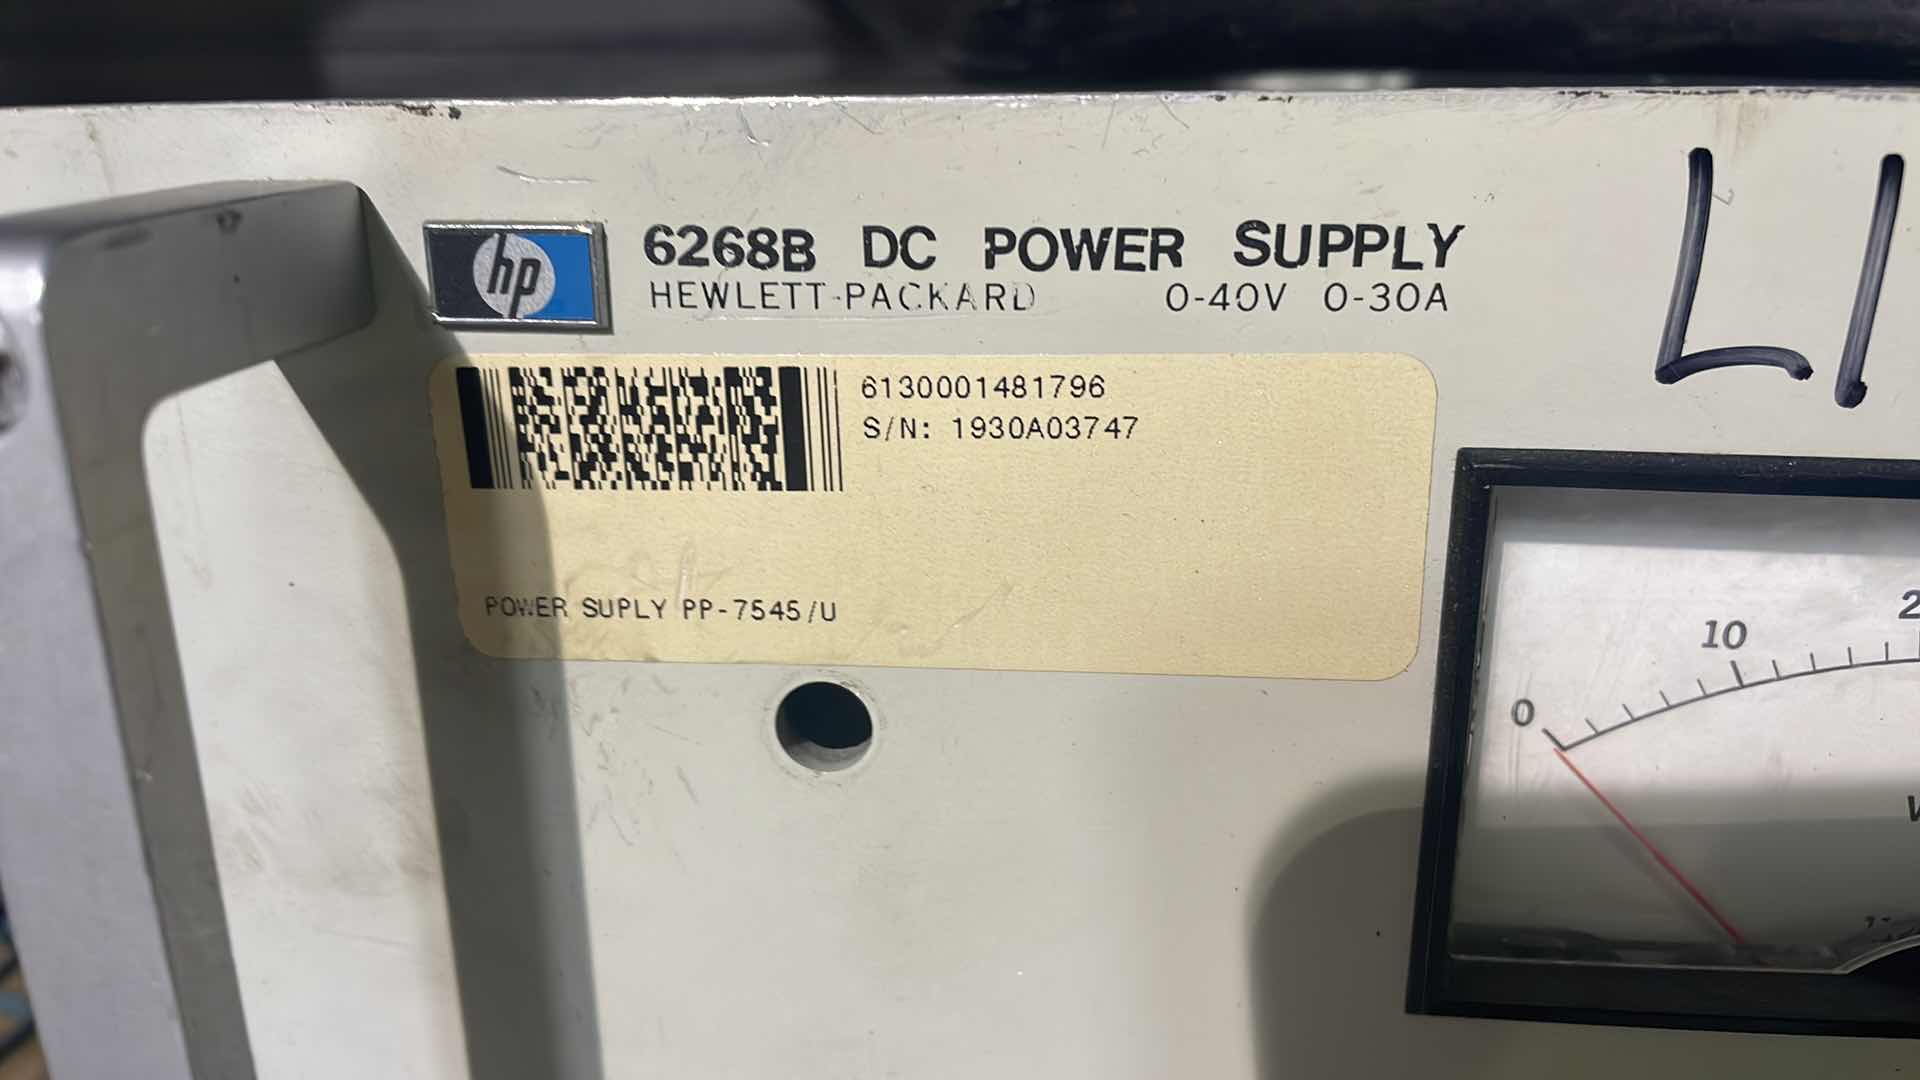 Photo 2 of HP 6268B DC POWER SUPPLY